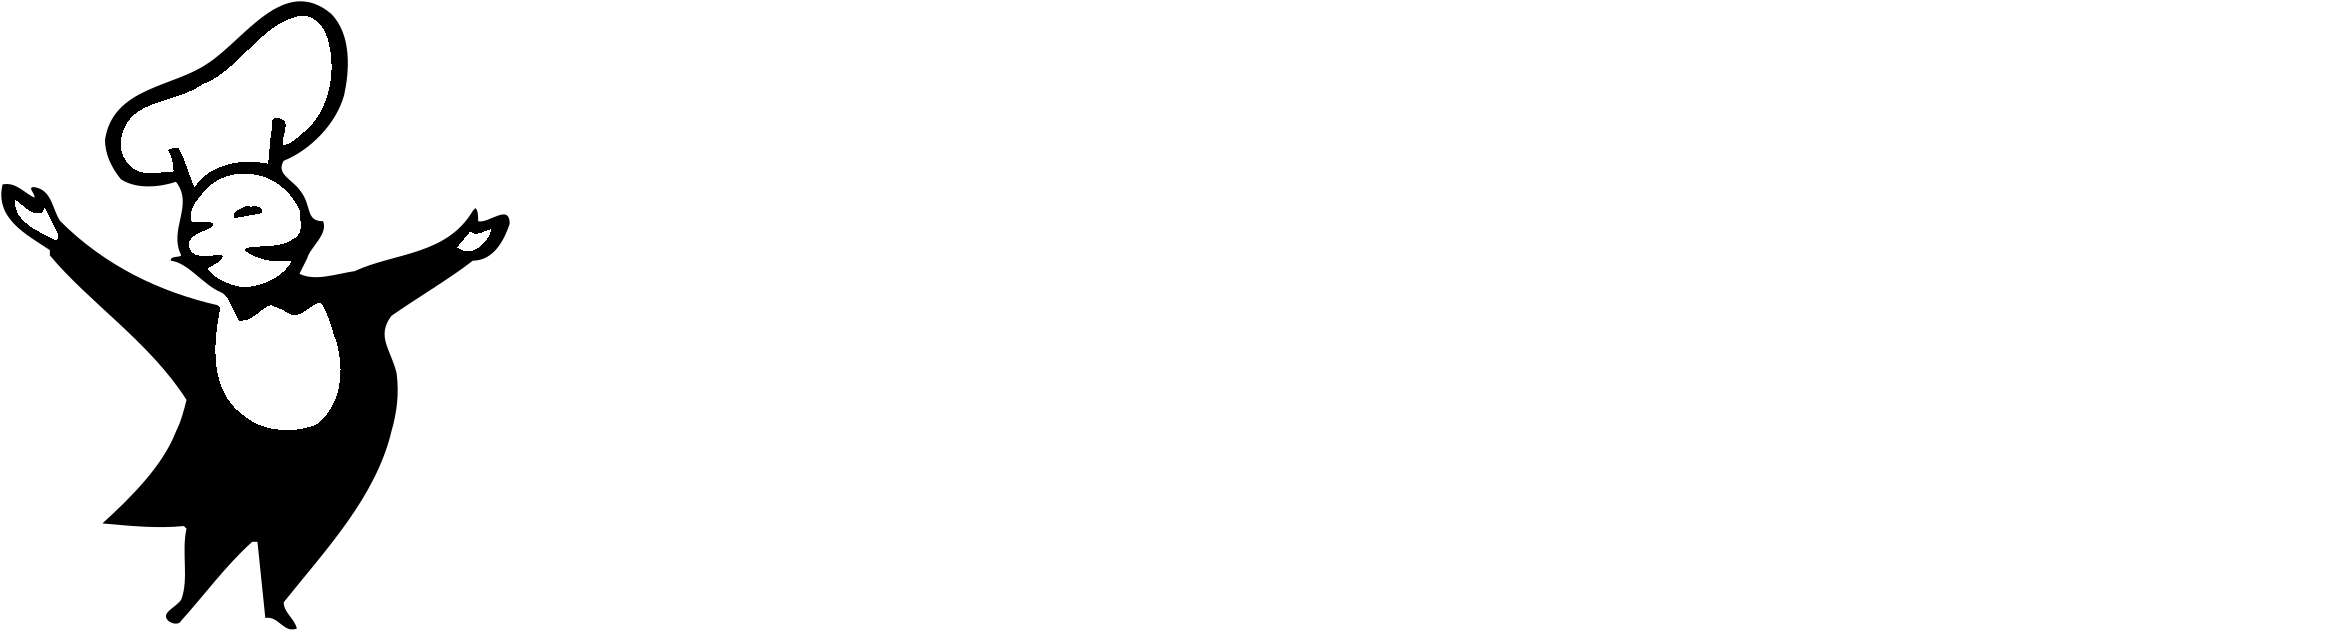 Magic Chef Logo Black And White - Magic Chef (2400x2400)